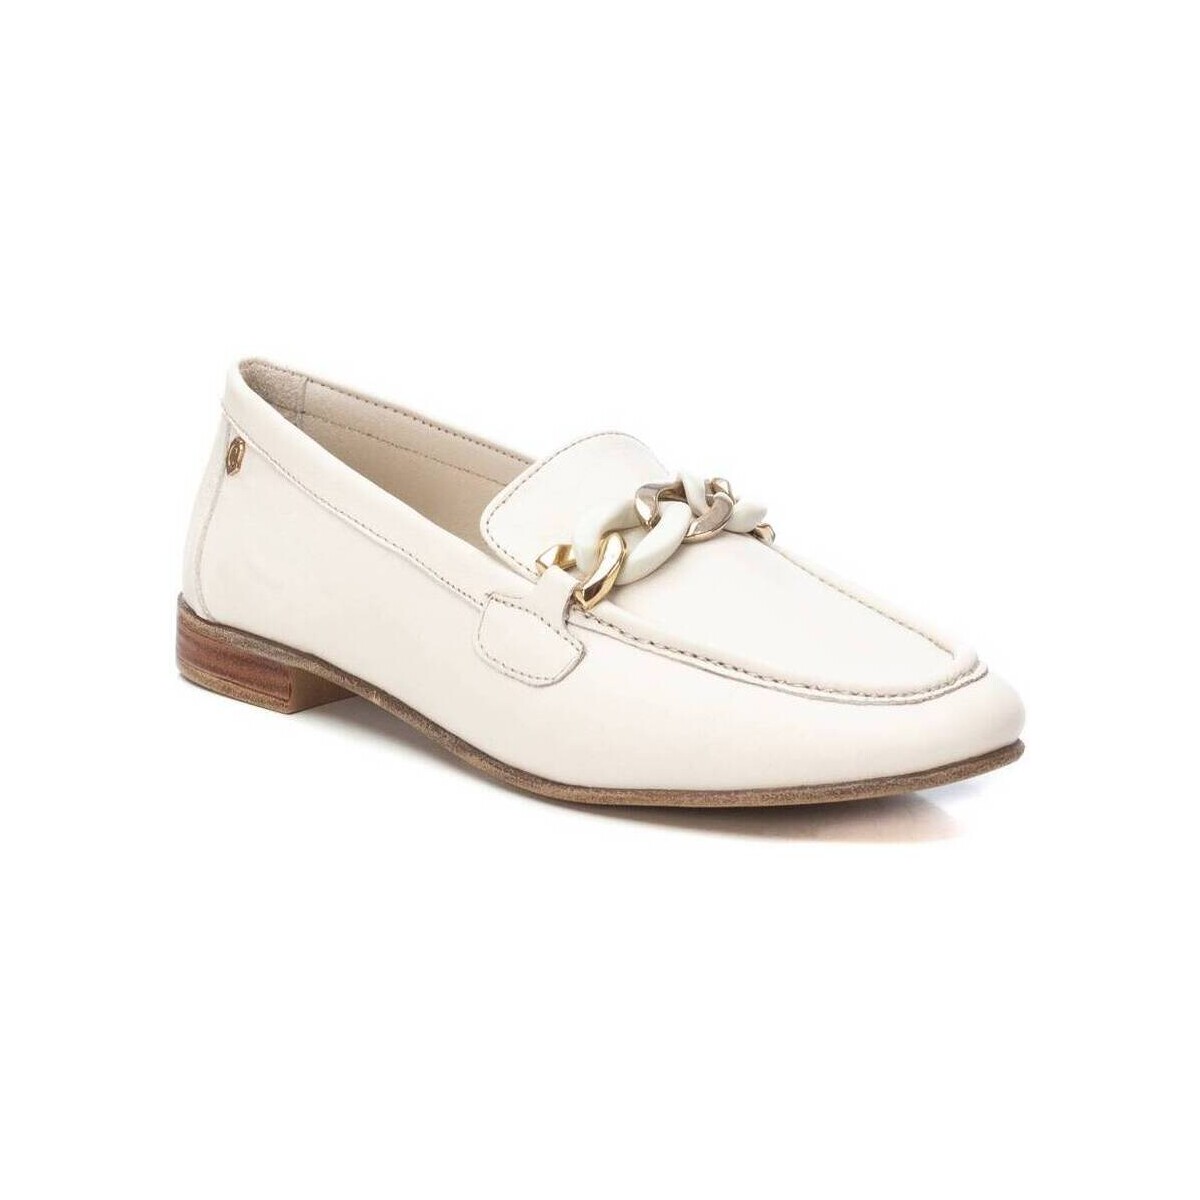 Zapatos Mujer Derbie & Richelieu Carmela 16156103 Blanco